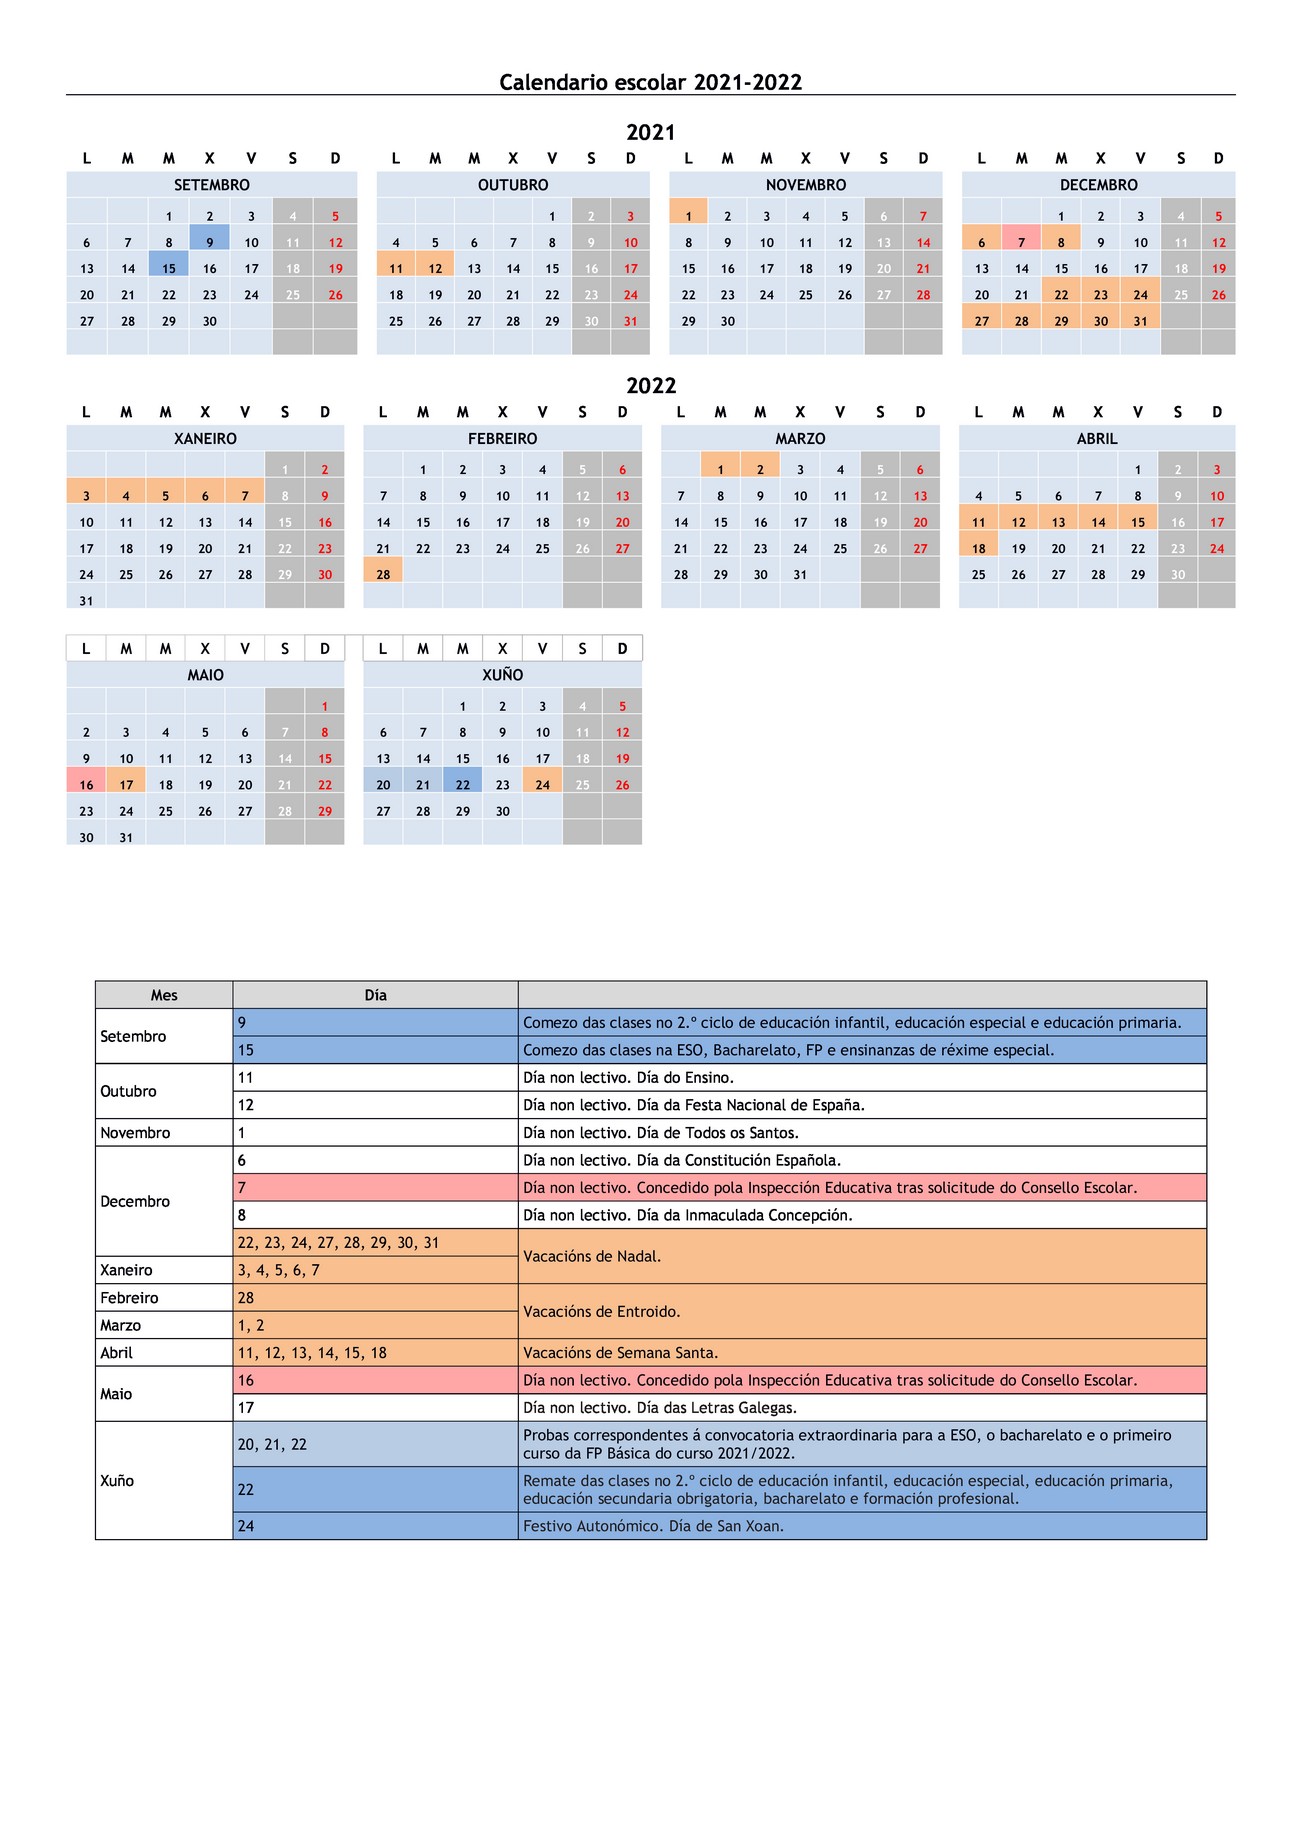 Calendario Escolar 2021/2022